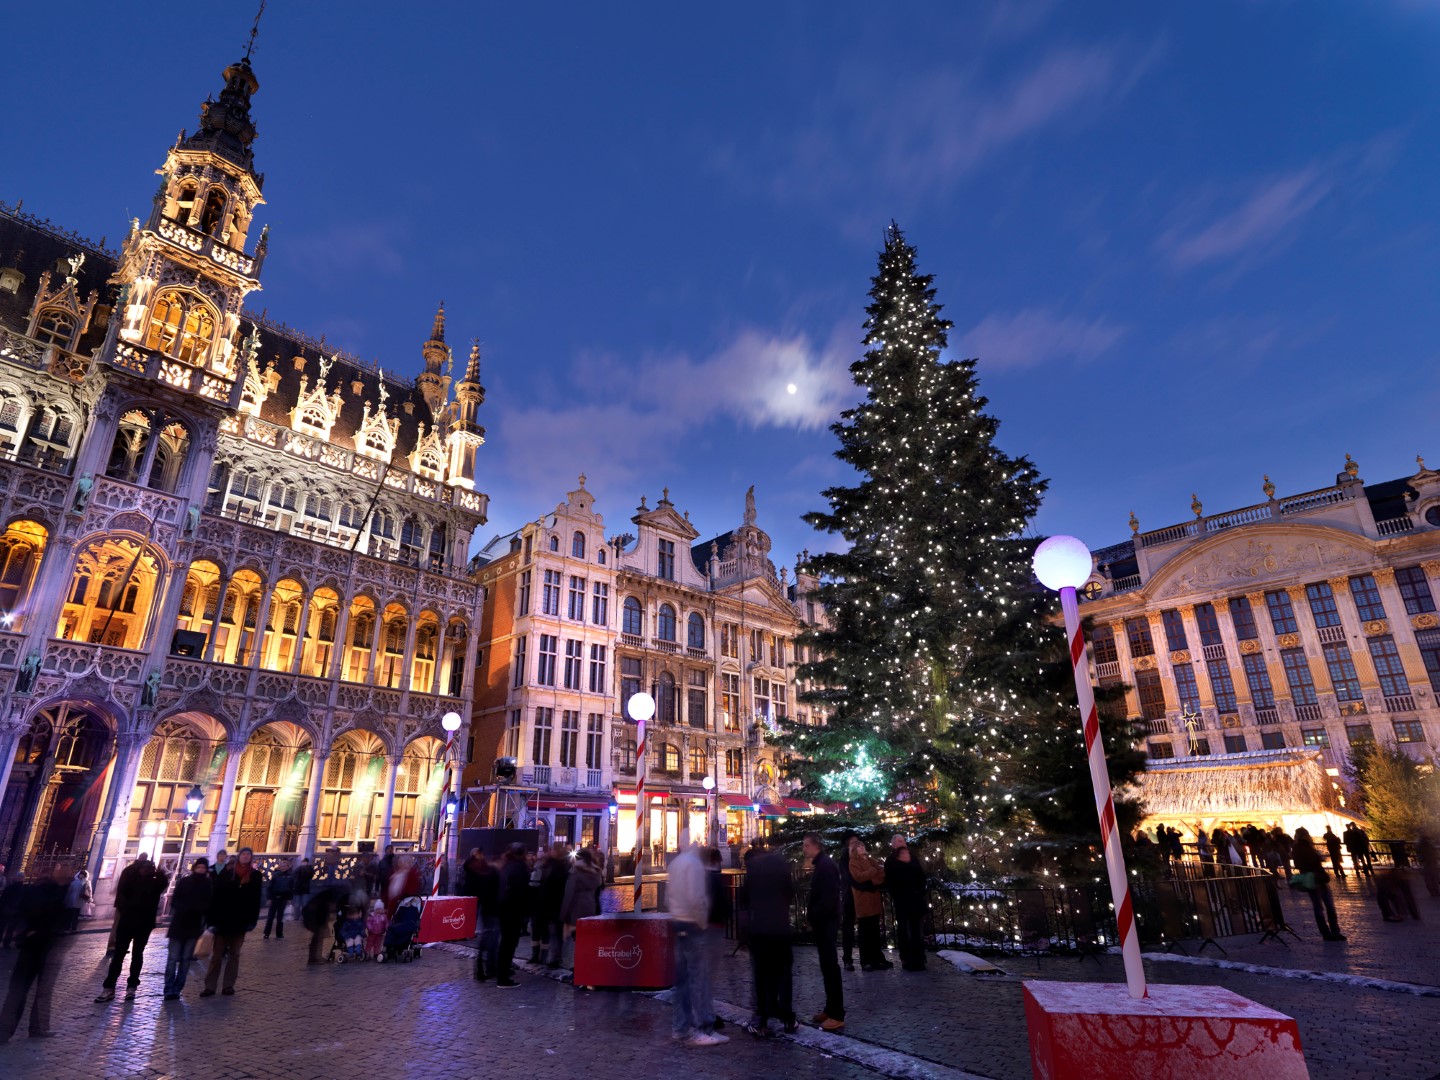  Bélgica contradice a EU: “No hay amenaza de EI en festejos navideños”